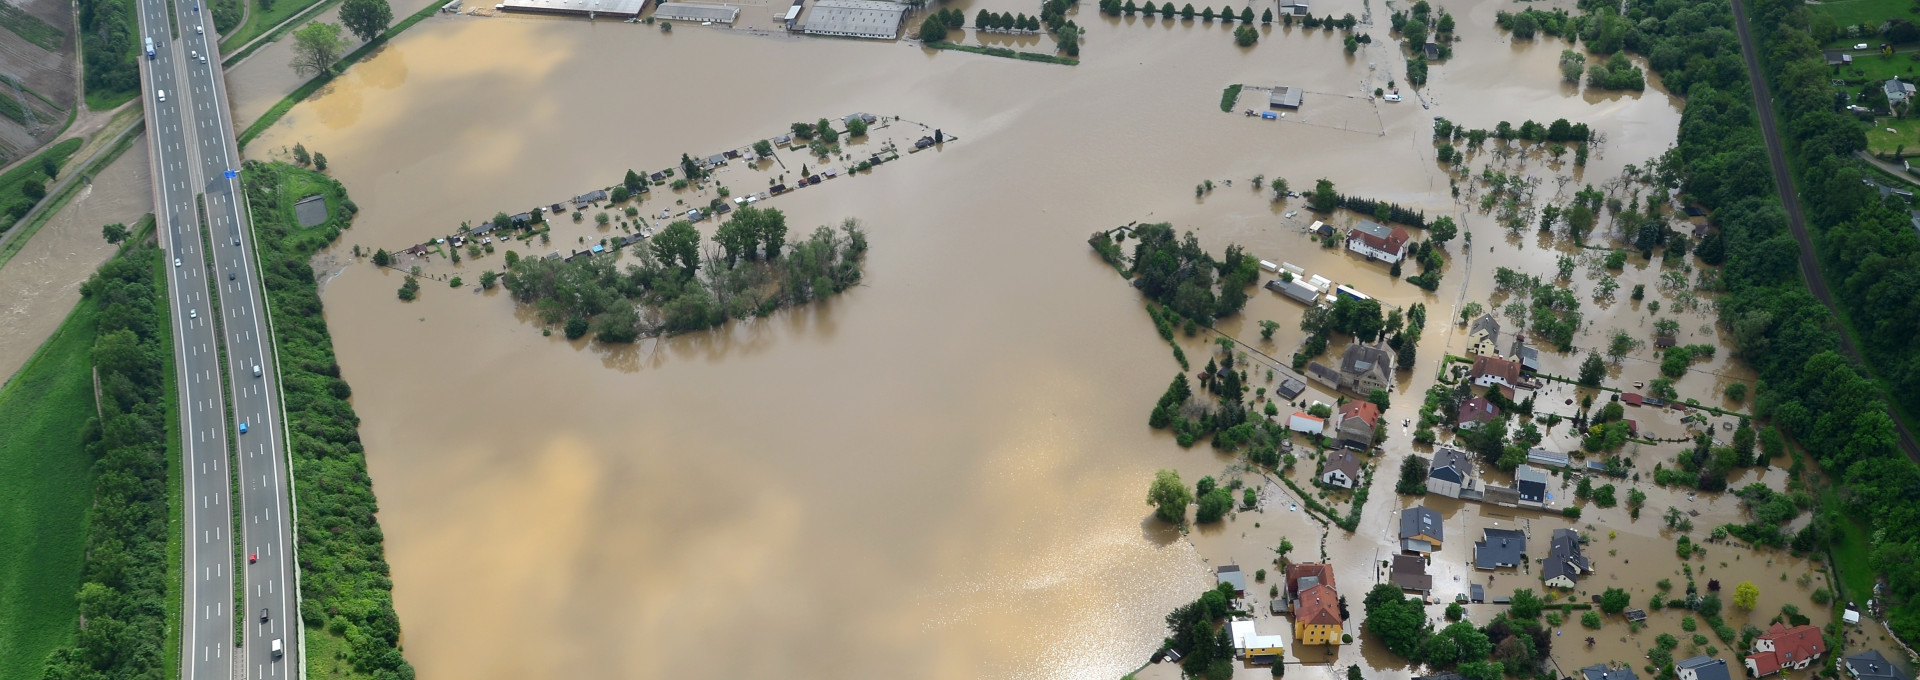 Mit Hochwasser überfluteter Landschaftszug. Häuser und Straßen stehen unter Wasser.